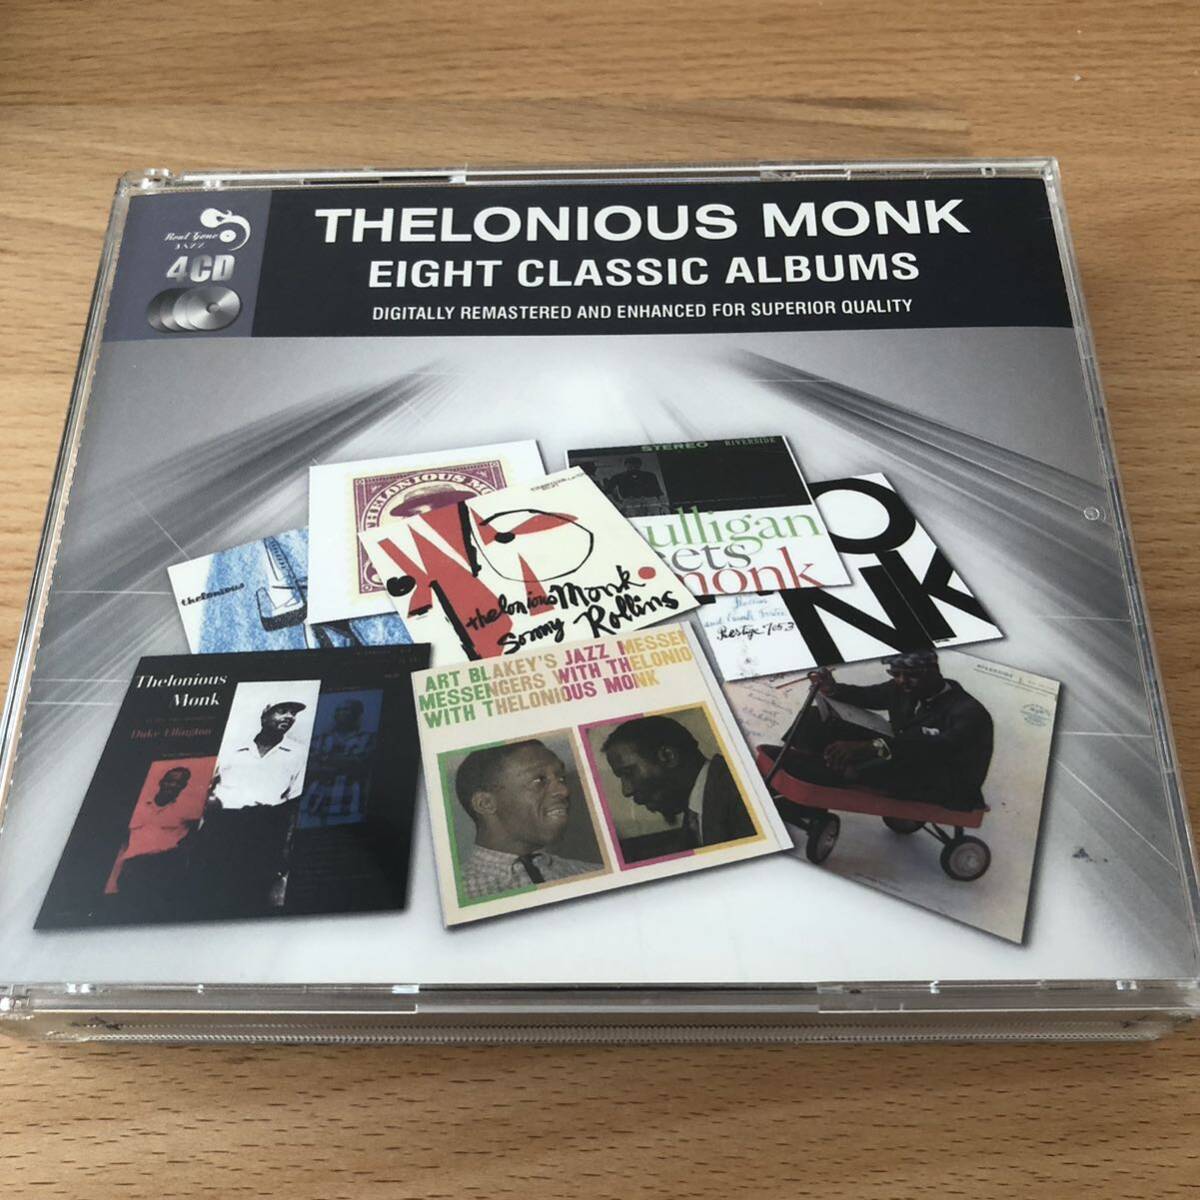 [4CD-BOX] Cello nias*monk|EIGHT CLASSIC ALBUMS